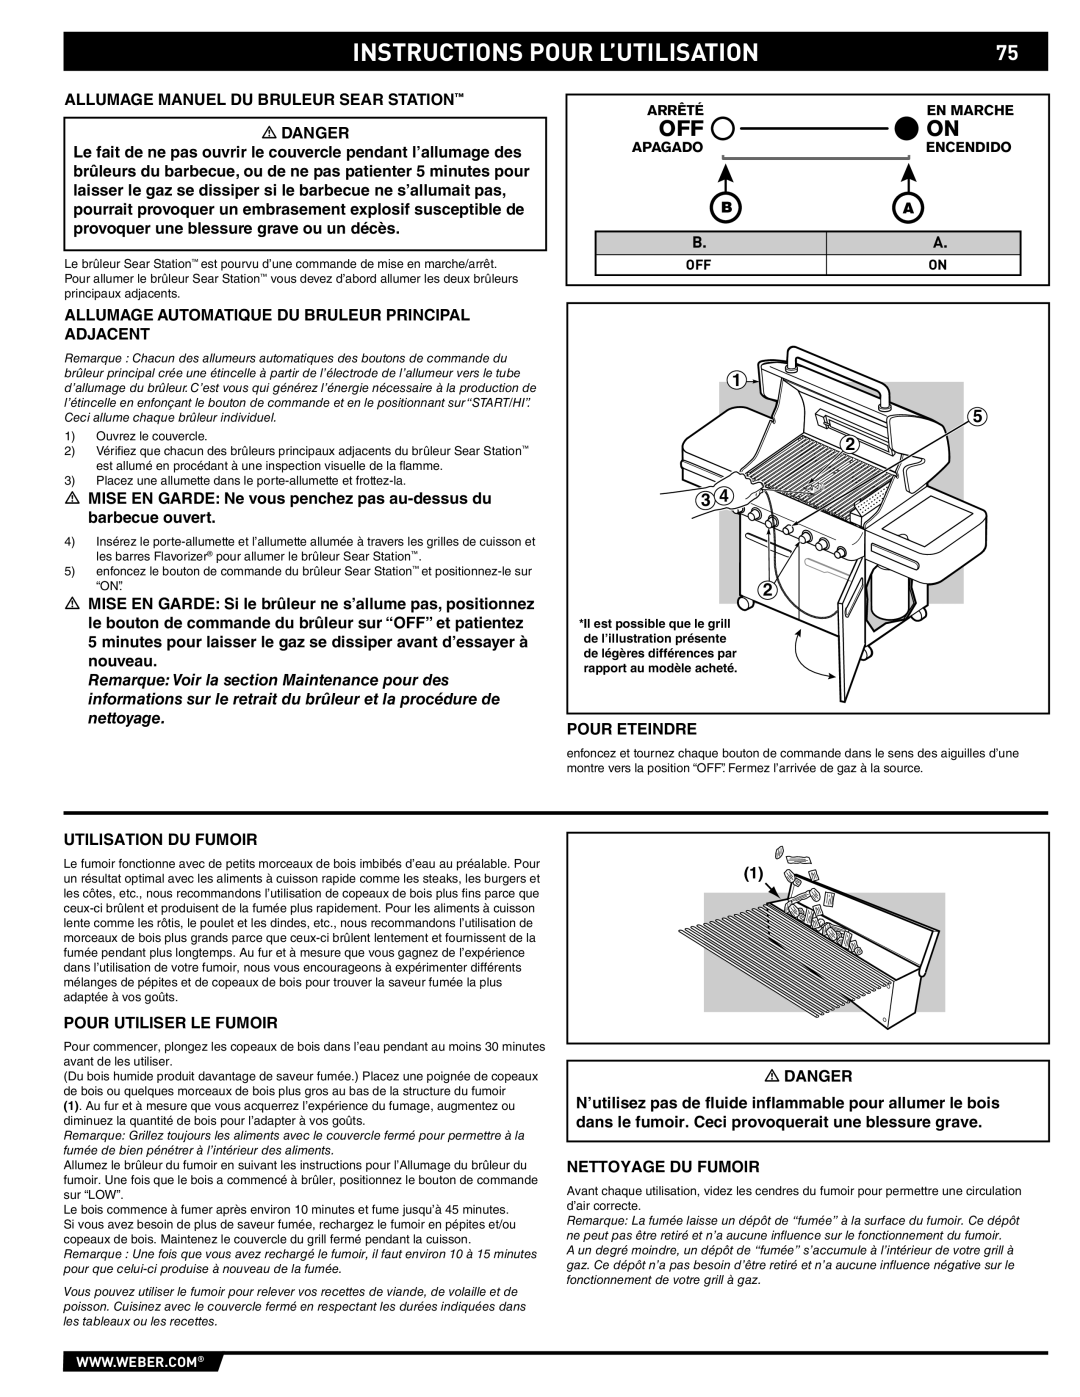 Summit 89190 manual Instructions Pour L’Utilisation 